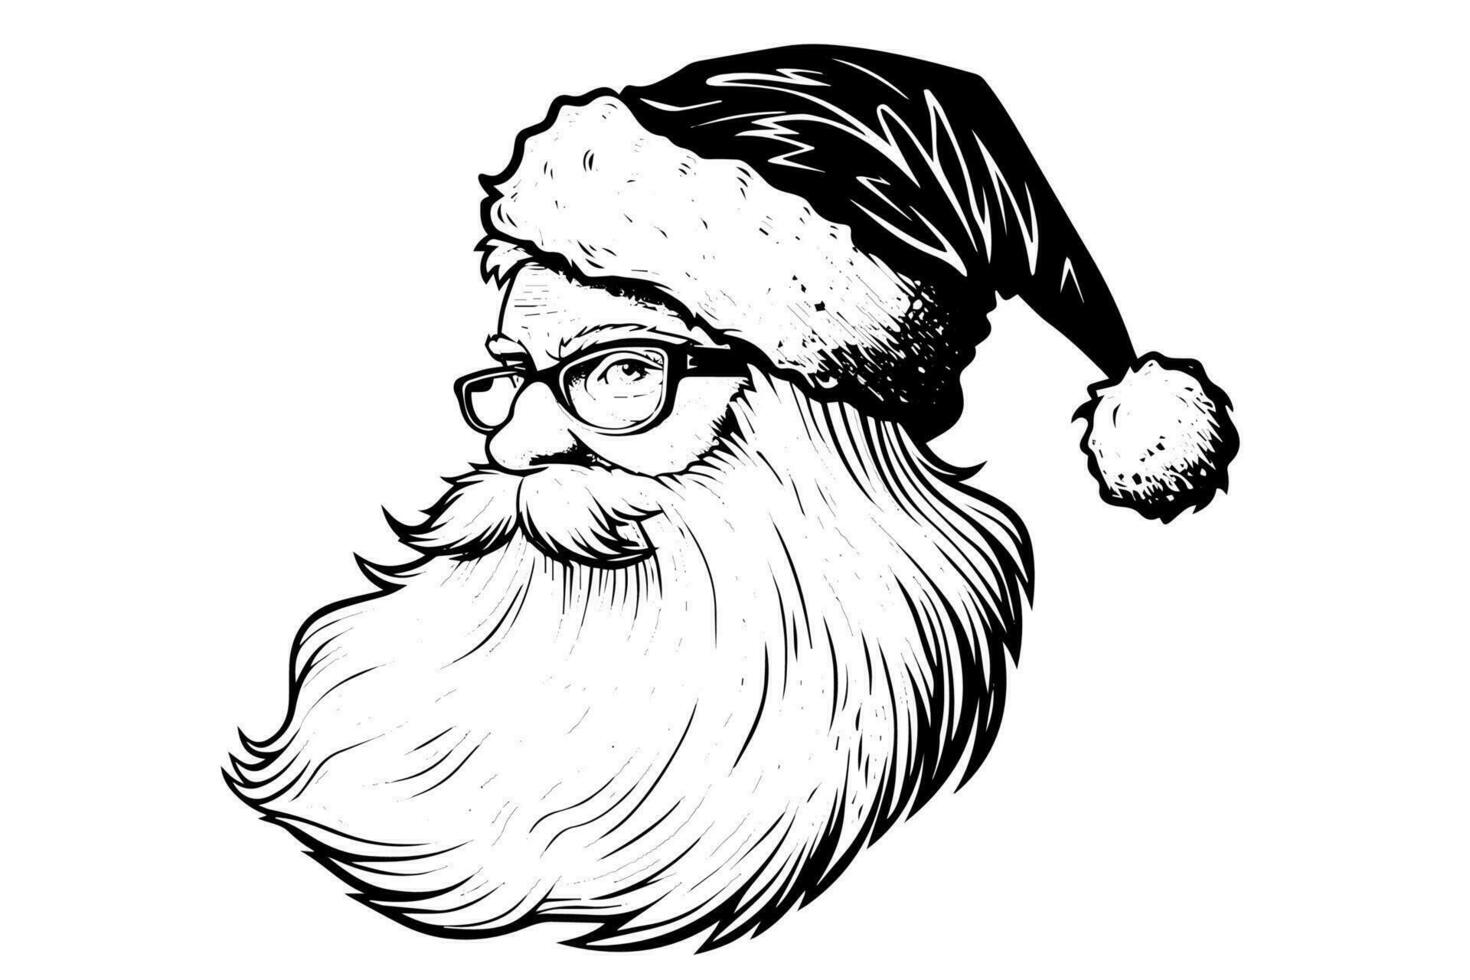 Père Noël claus tête dans une chapeau esquisser main tiré dans gravure style vecteur illustration.